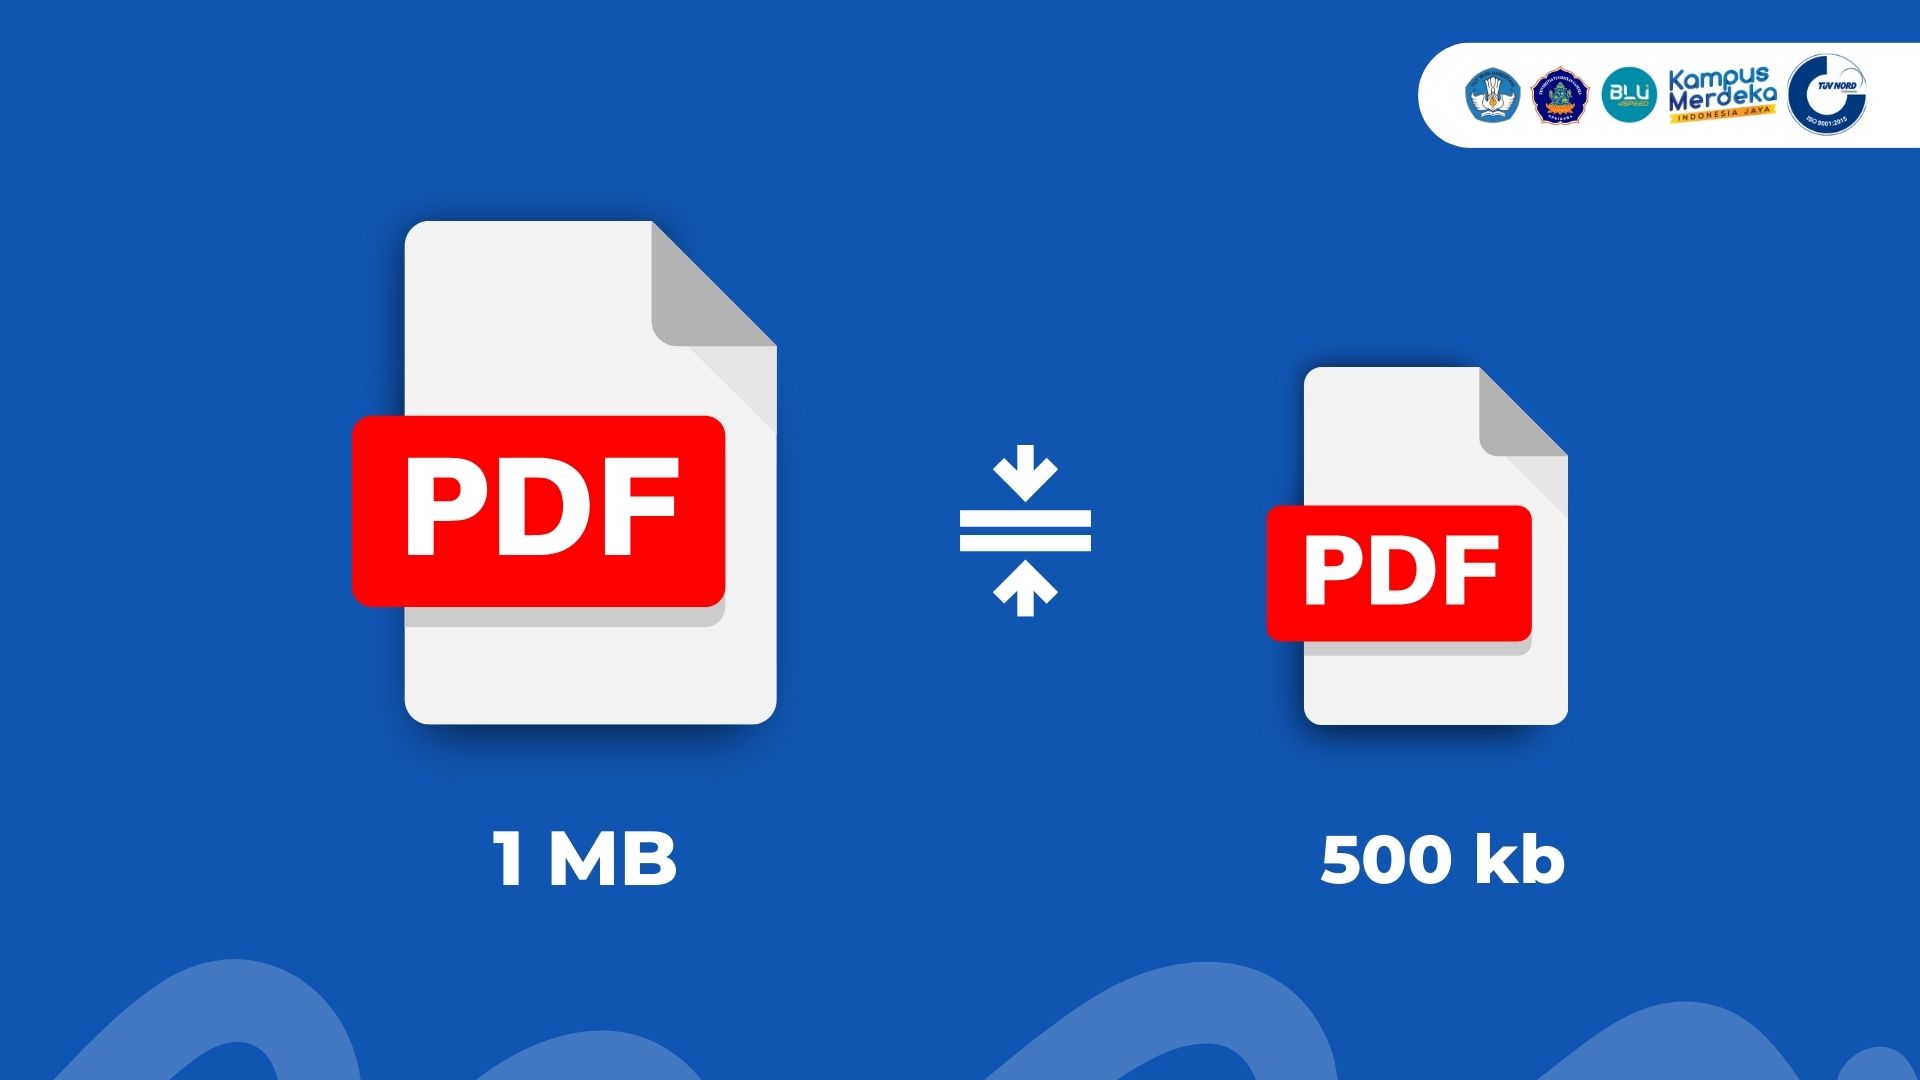 Aplikasi Untuk Memperkecil Ukuran File Pdf. 6 Rekomendasi Website untuk Mengecilkan File PDF